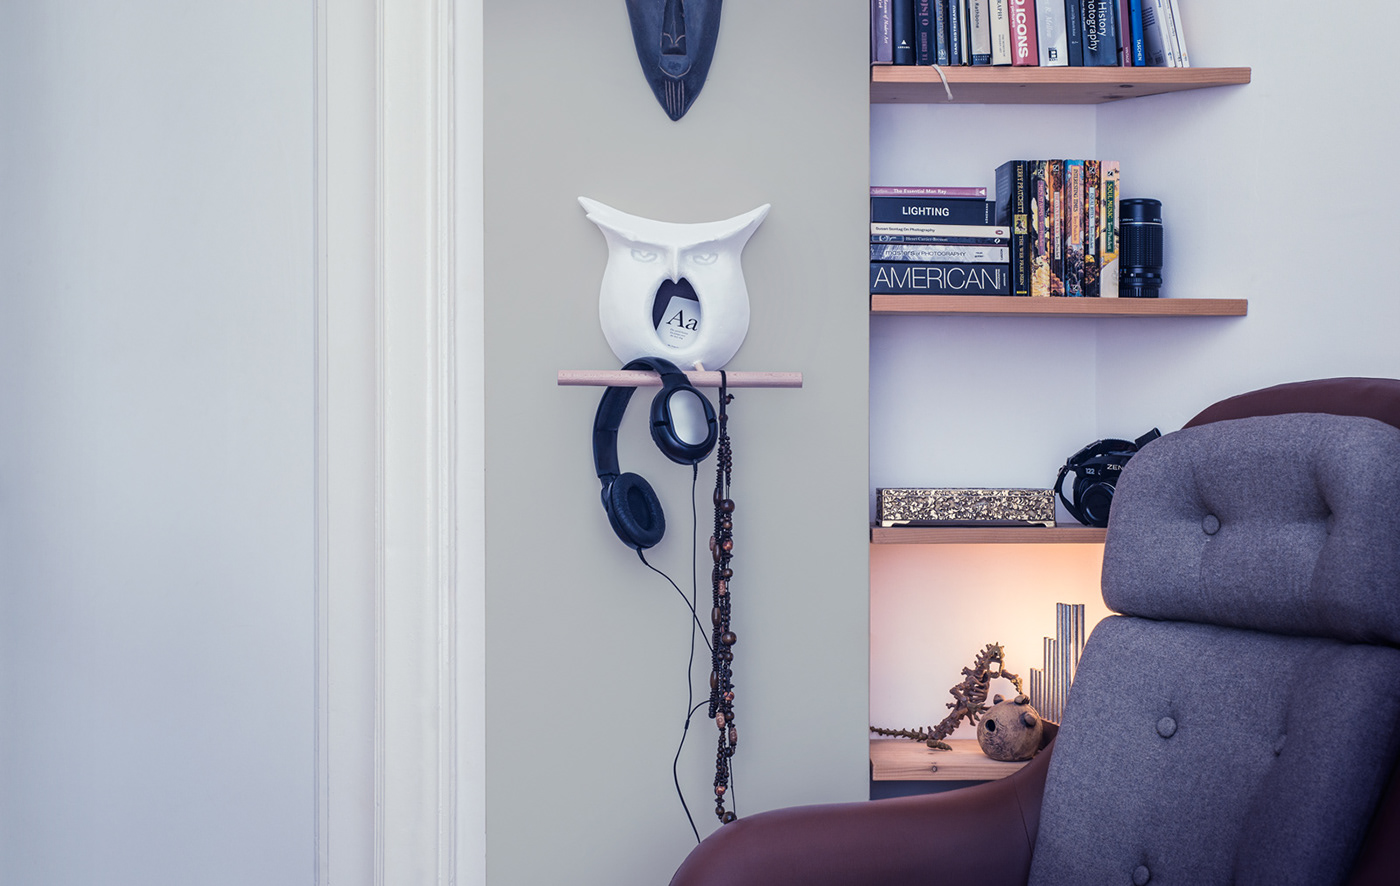 bird house owl HOME ACCESSORY Papier Mache decor home award winning sculpture арт